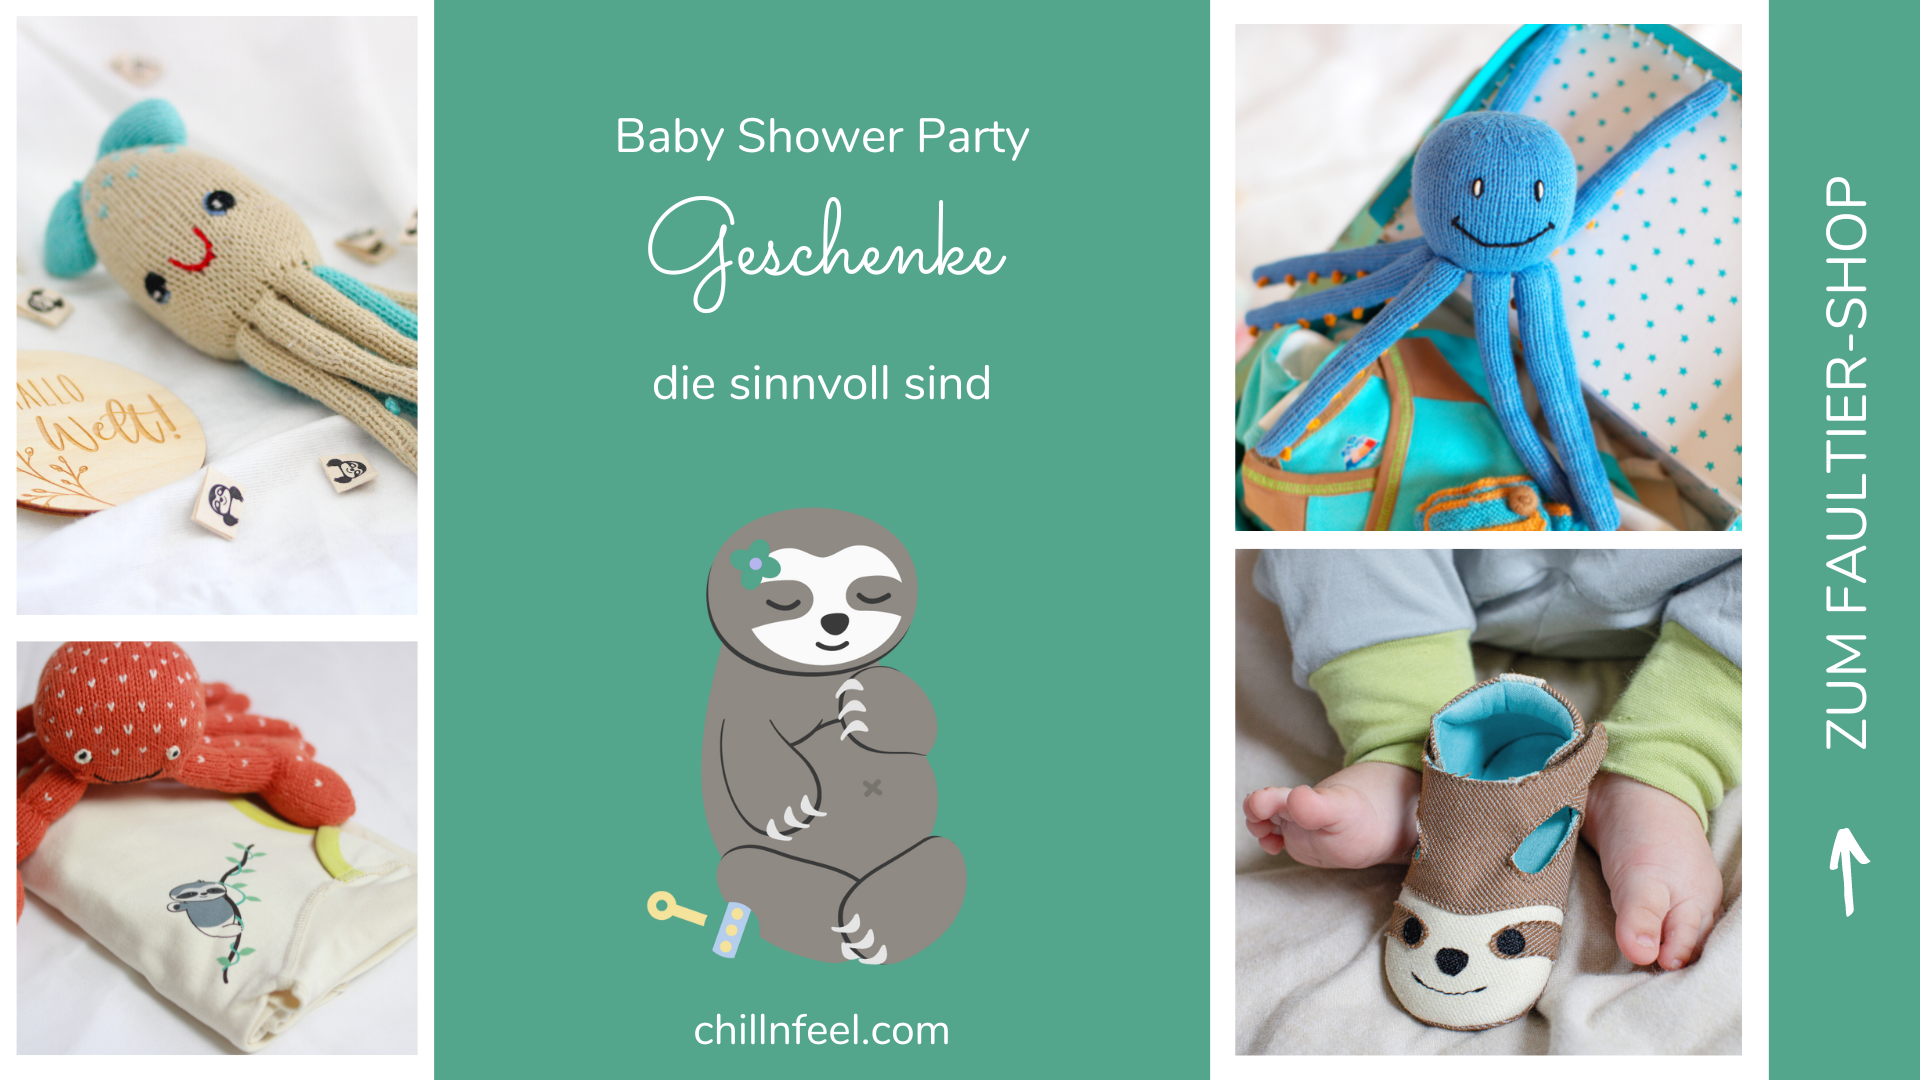 Geschenkideen zur Baby Shower Party